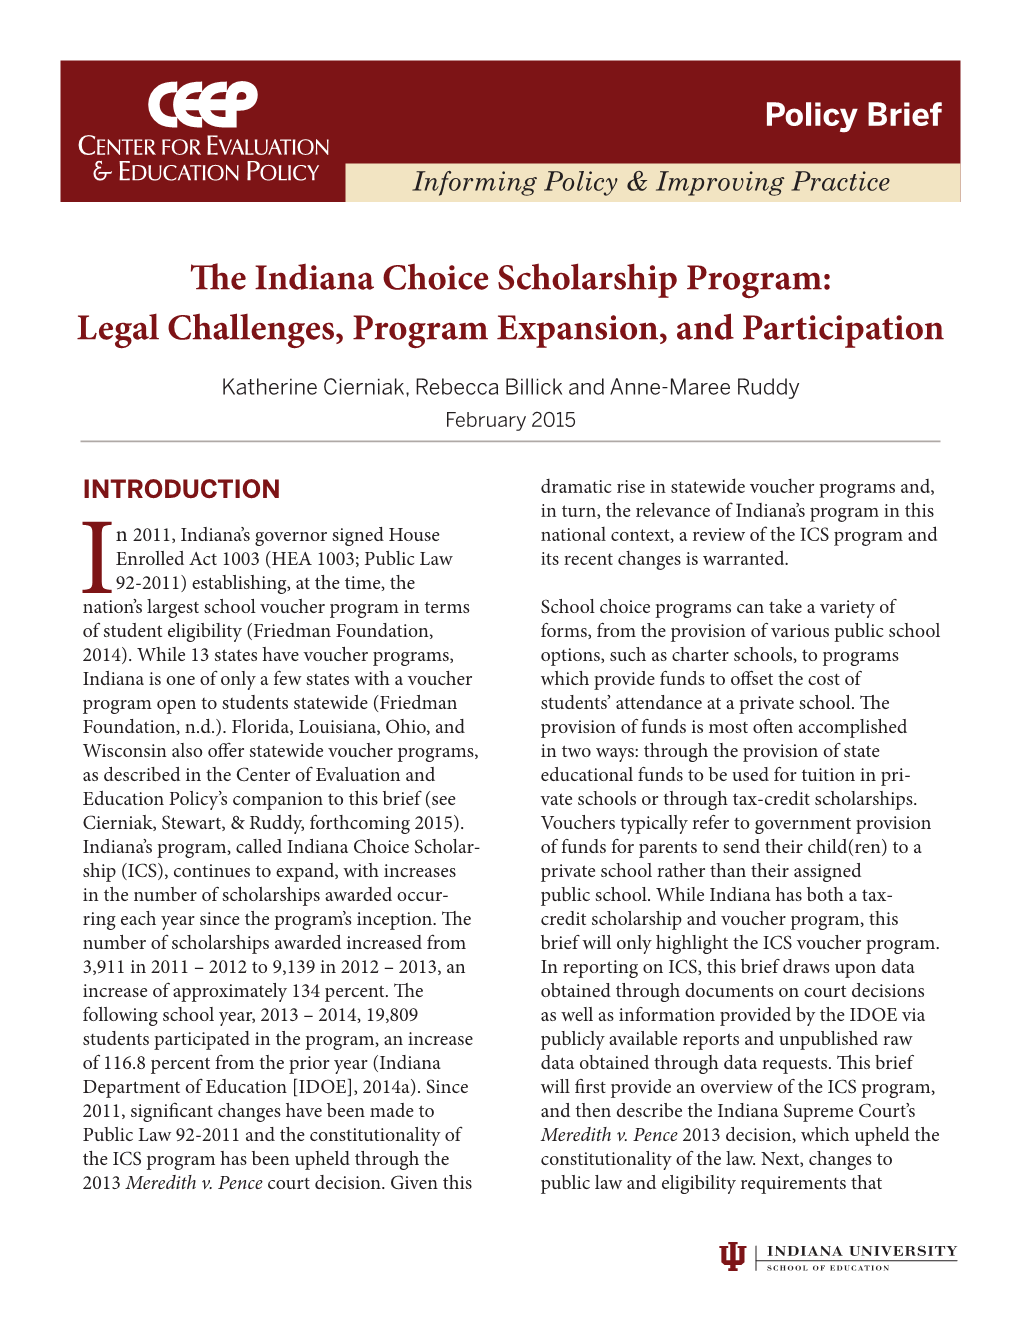 The Indiana Choice Scholarship Program